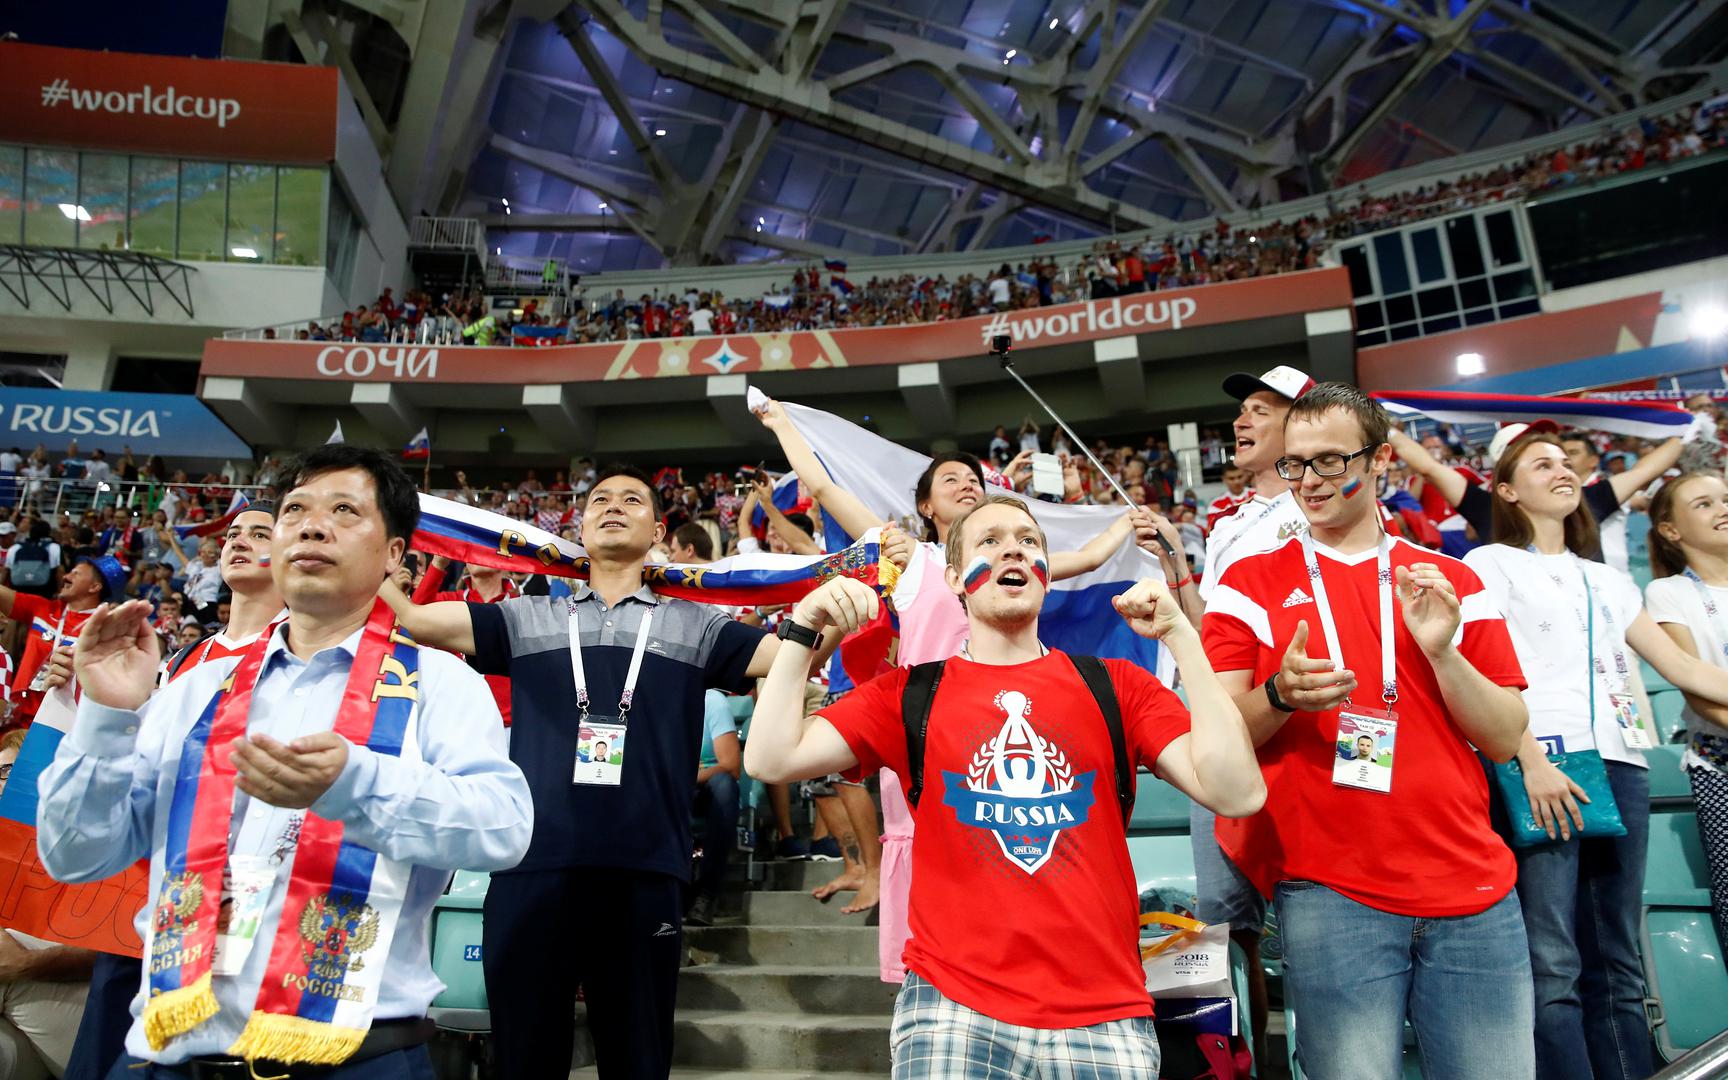 O posljednjem putniku u četvrtfinale Svjetskog prvenstva u Sočiju odlučivali su Hrvatska i Rusija.

